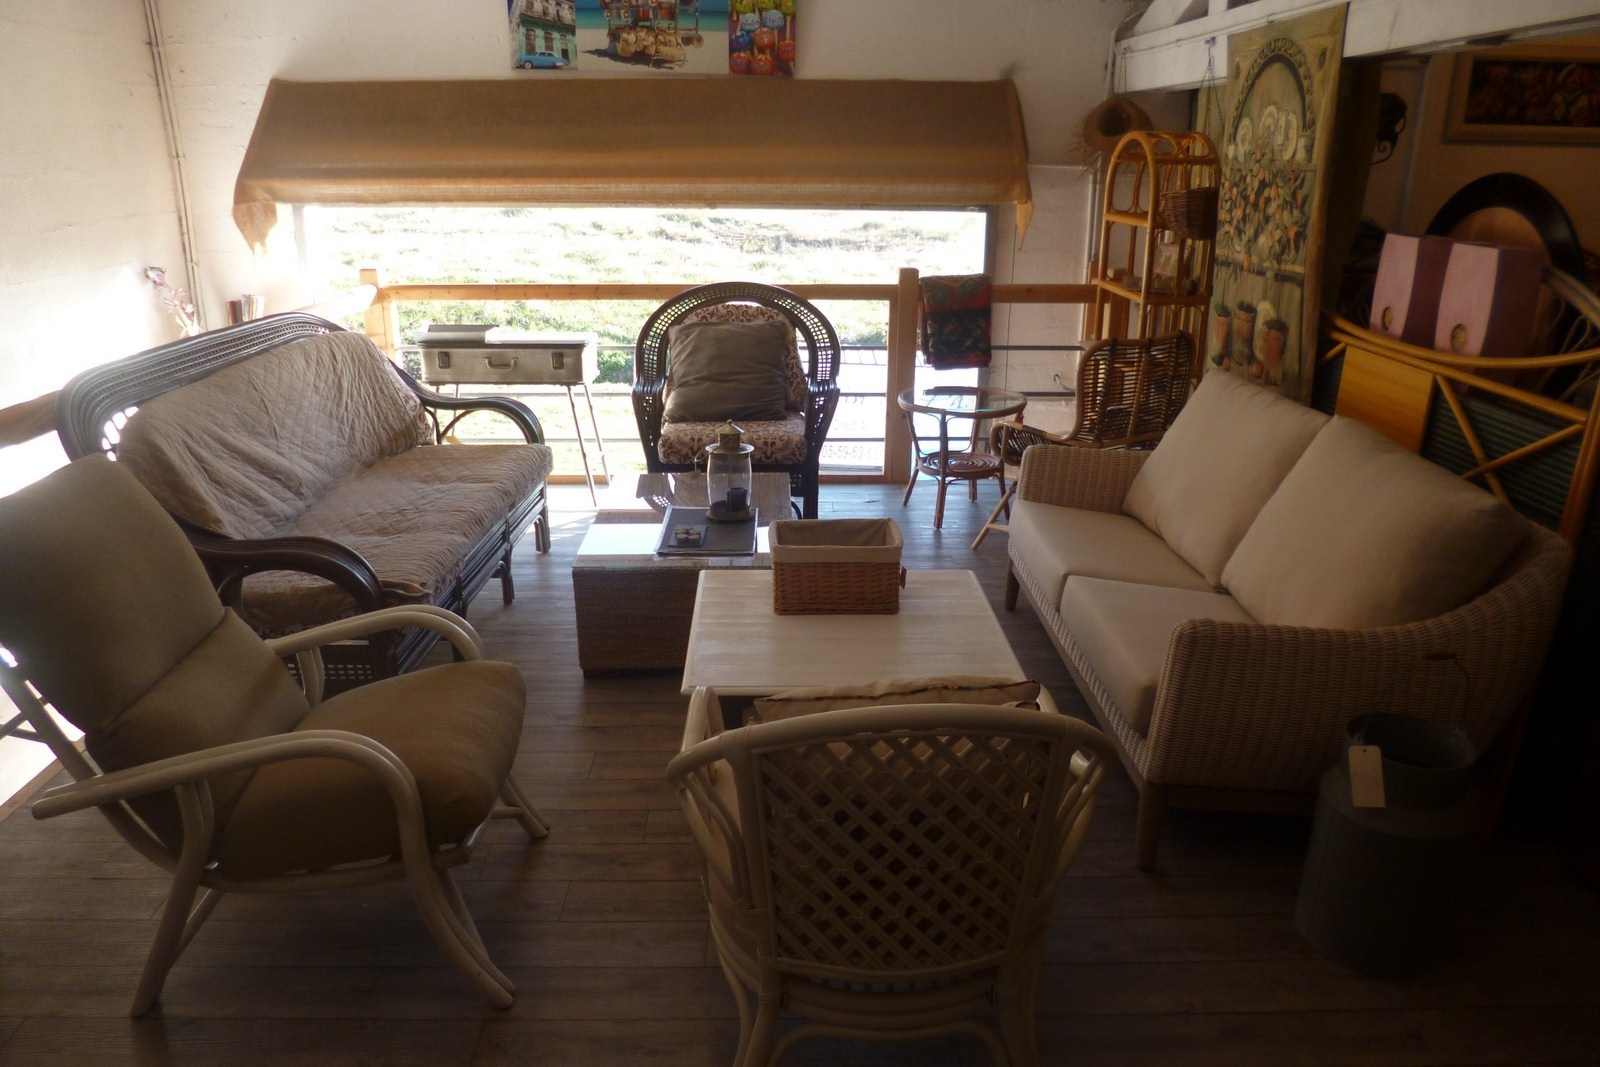 Loveuse grise avec coussins - Rotin du Pacific  Vente de meubles en rotin,  en bambou, en bananier au Pays Basque. Meuble sur mesure.